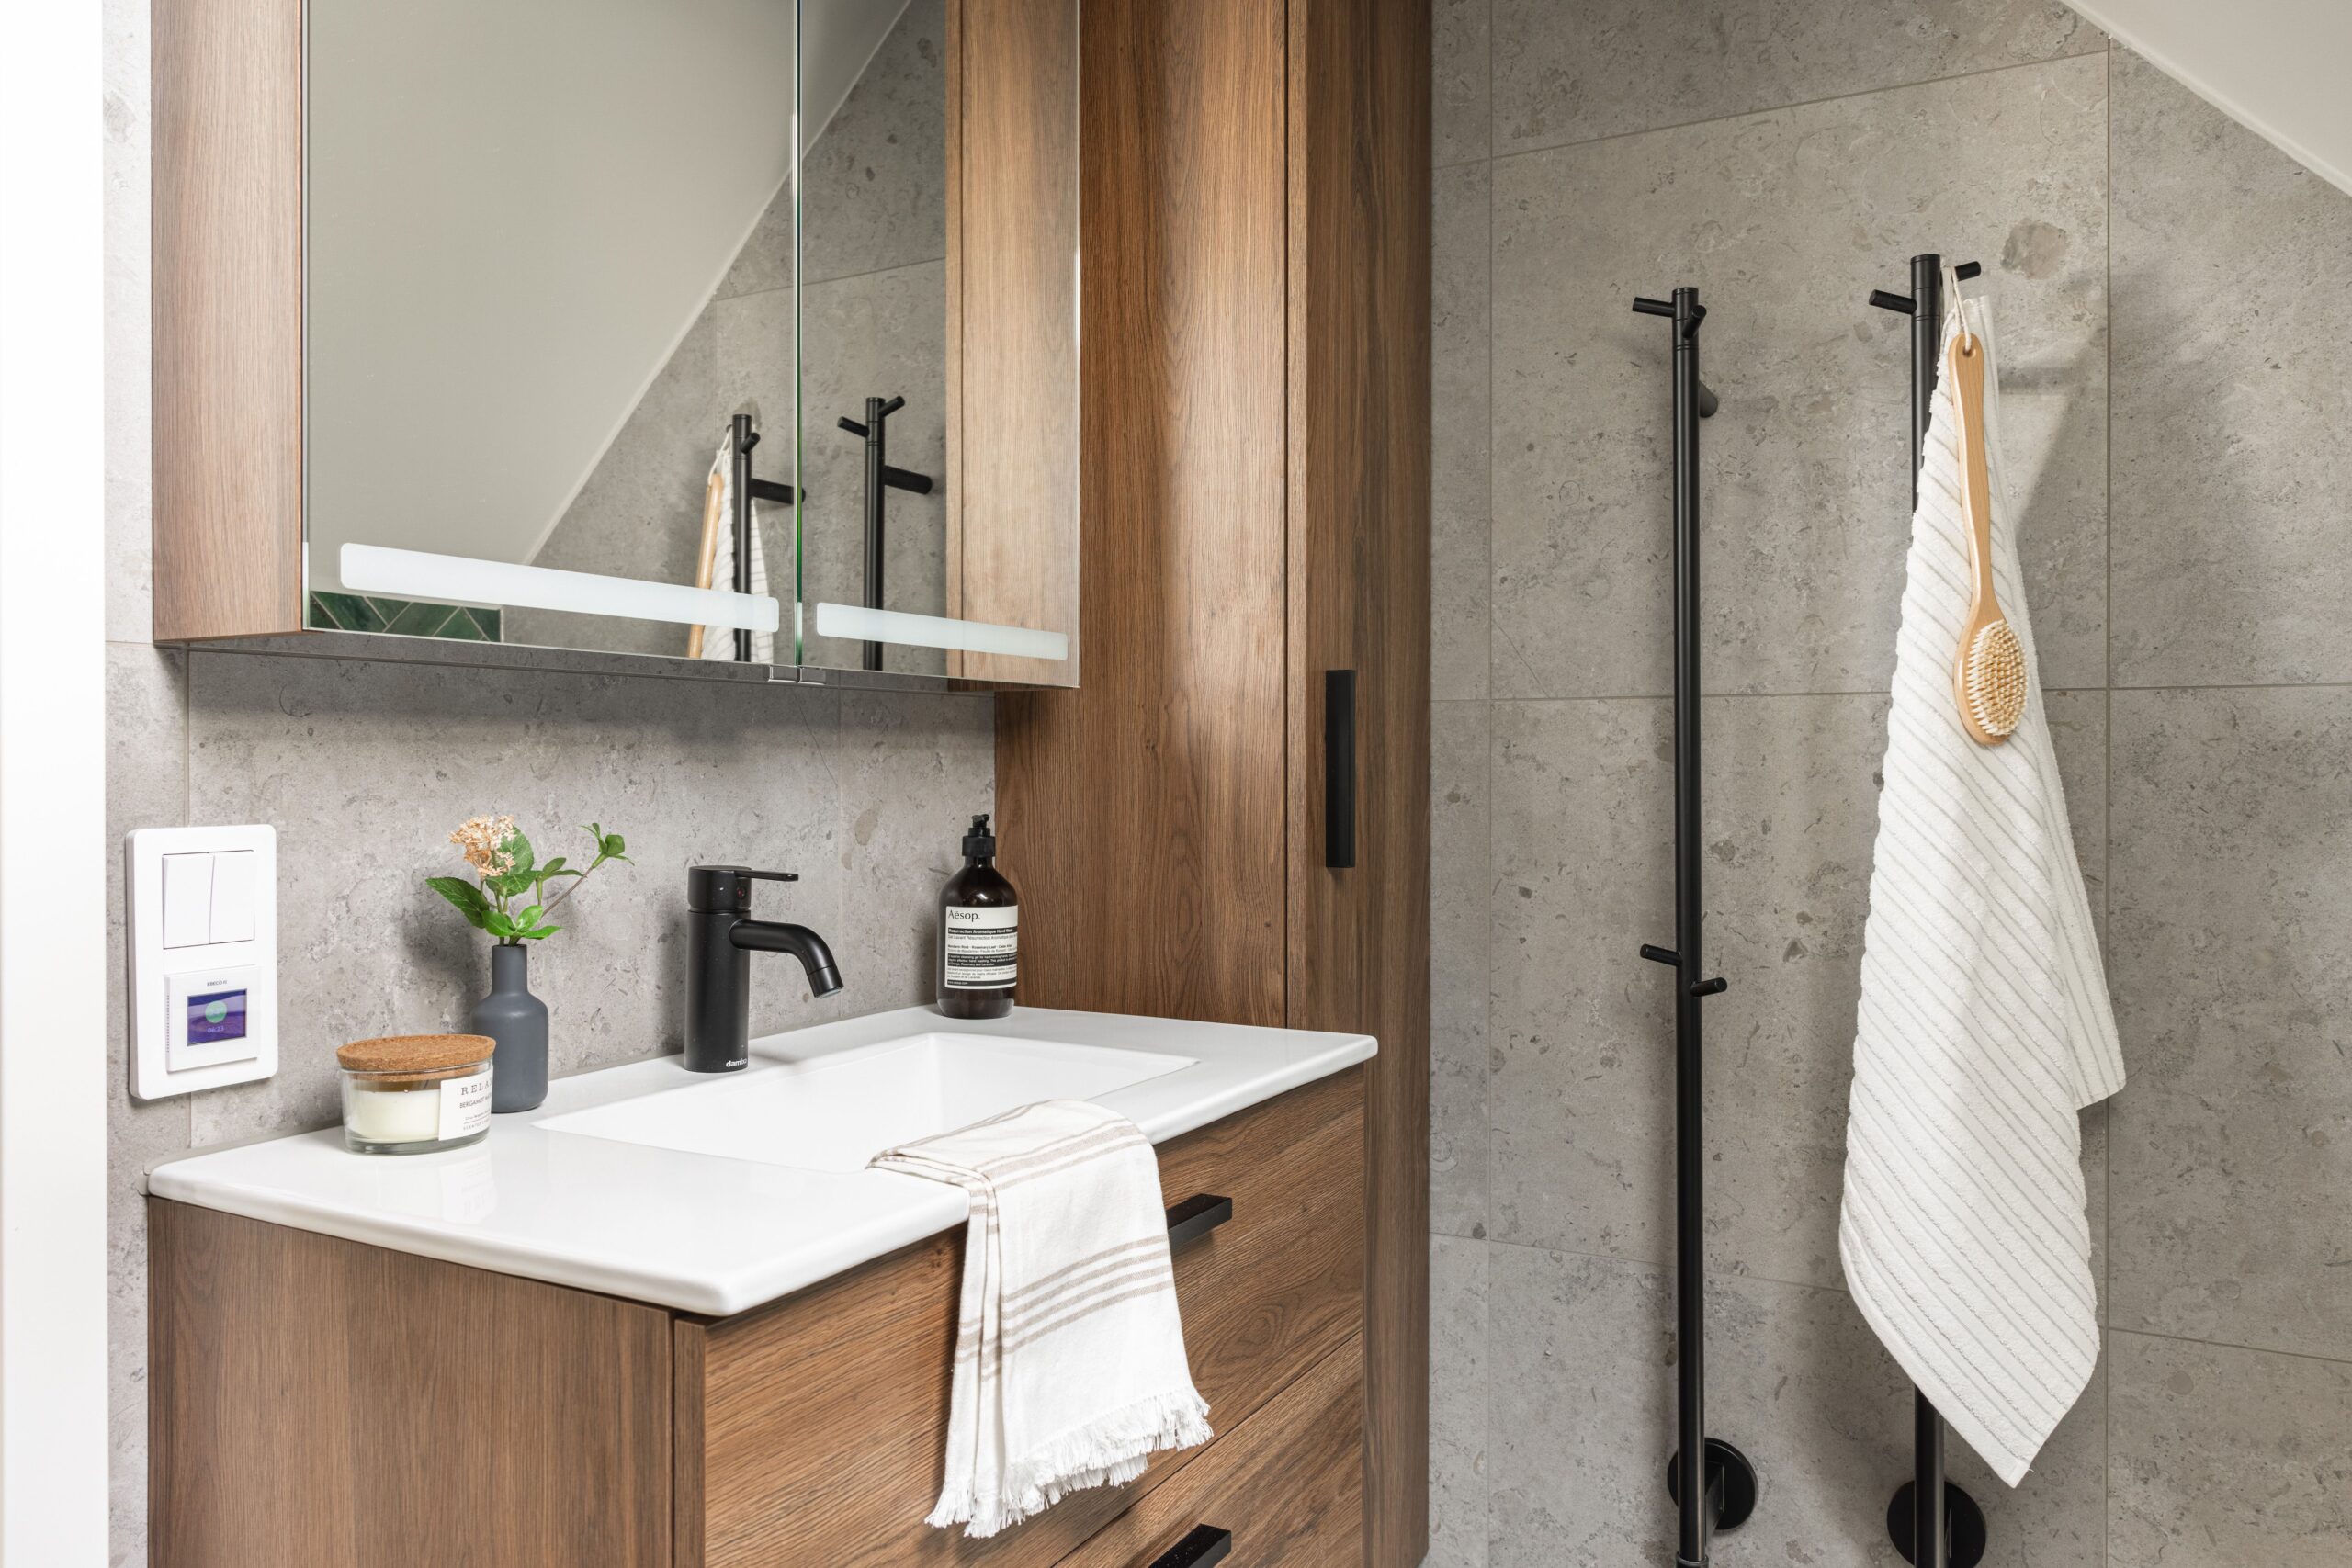 Ett elegant och moderniserat badrum med kombinationen av träskåp och gråa stentexturerade kakel som ger en balanserad och naturlig känsla.